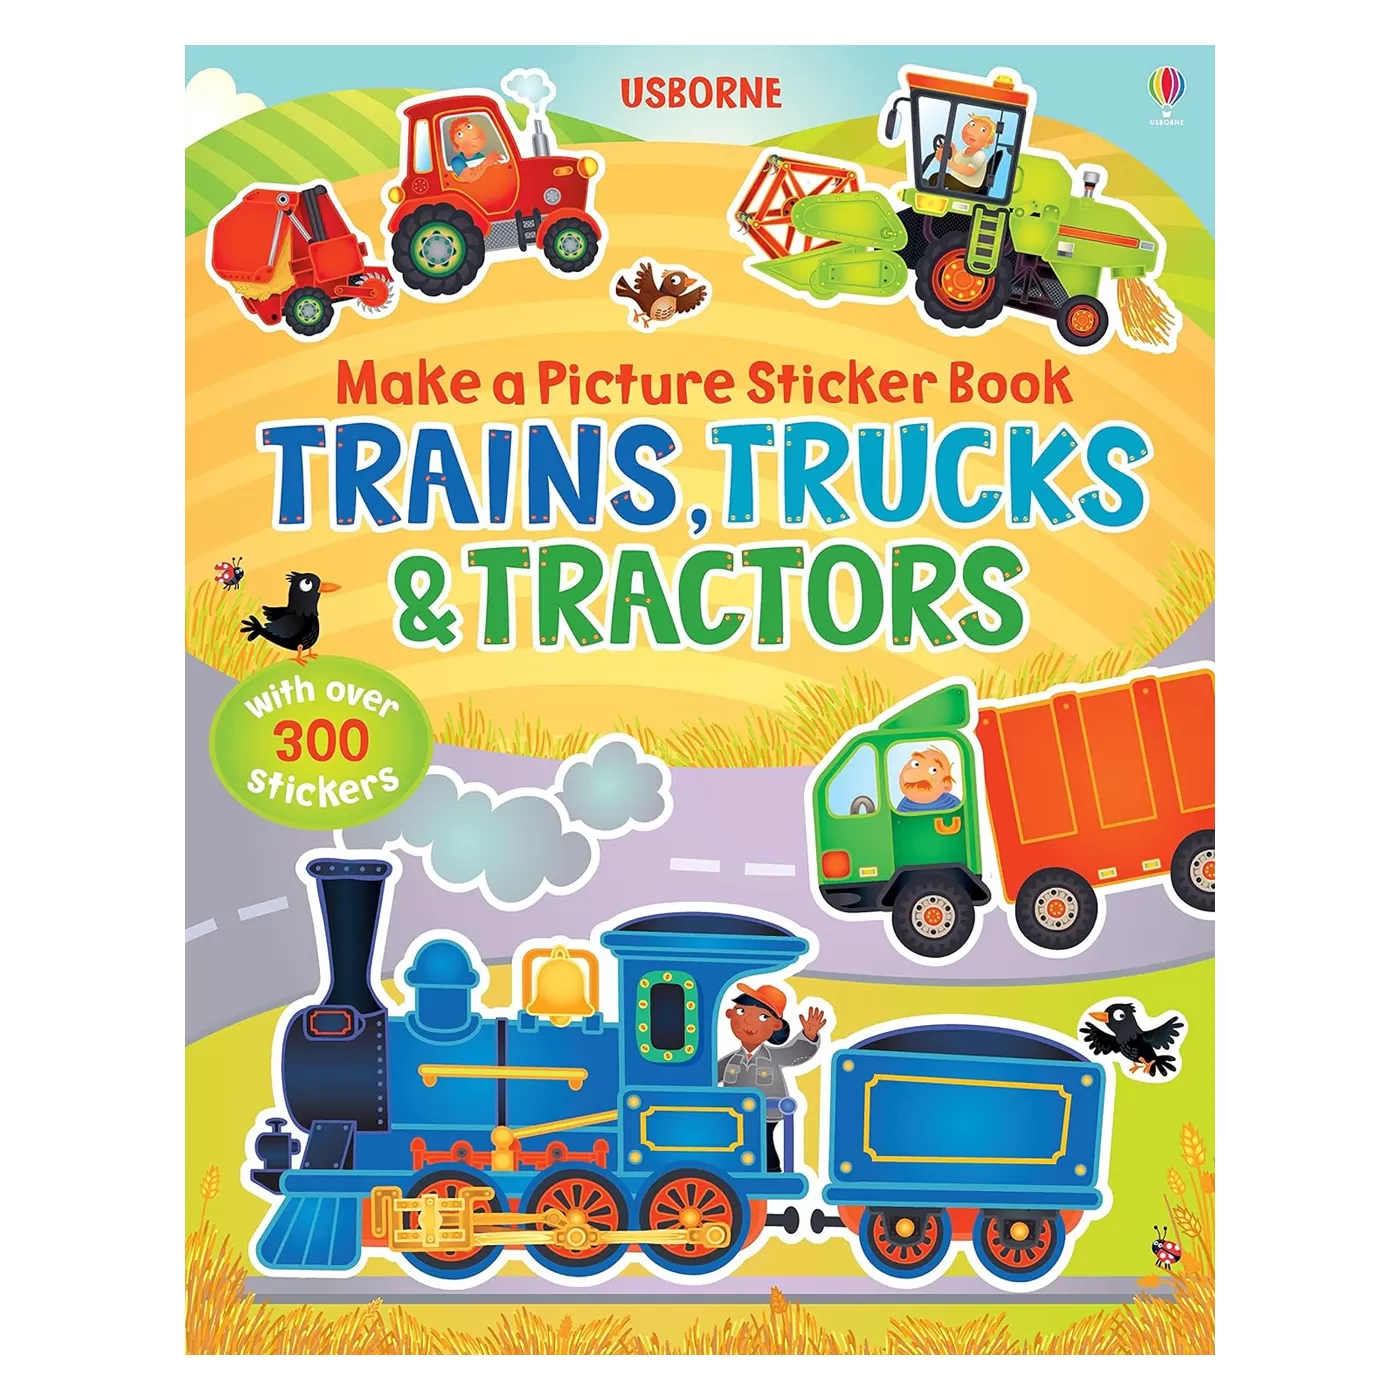 USBORNE Make a Picture Sticker Book Trains, Trucks & Tractors